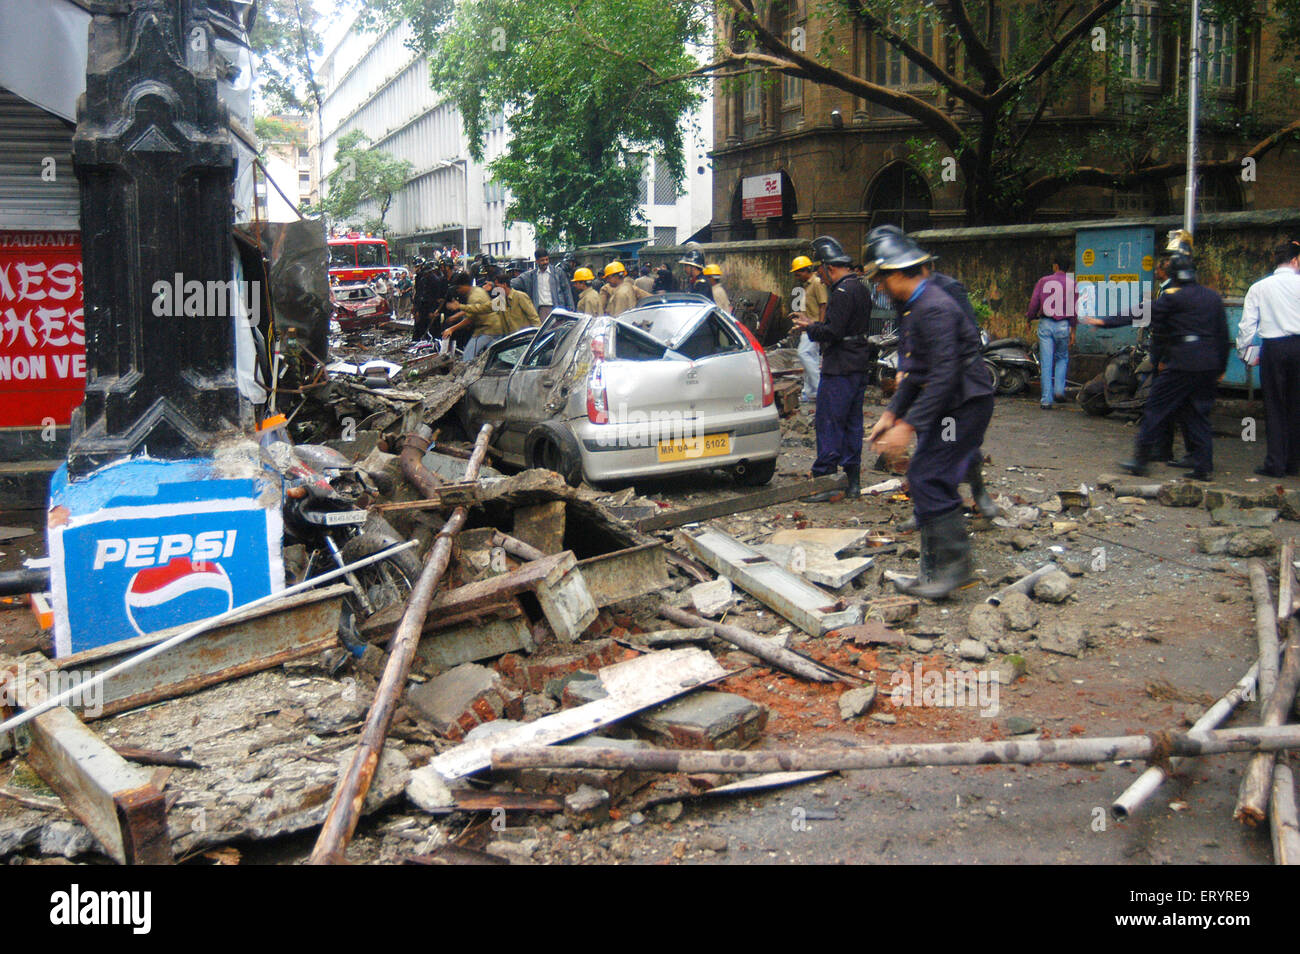 Brigade de pompiers pour nettoyer les débris, Esplanade Mansion Collapse, Kala Ghoda, Bombay, Bombay, Mumbai, Maharashtra, Inde, Asie, effondrement de l'édifice indien, Banque D'Images